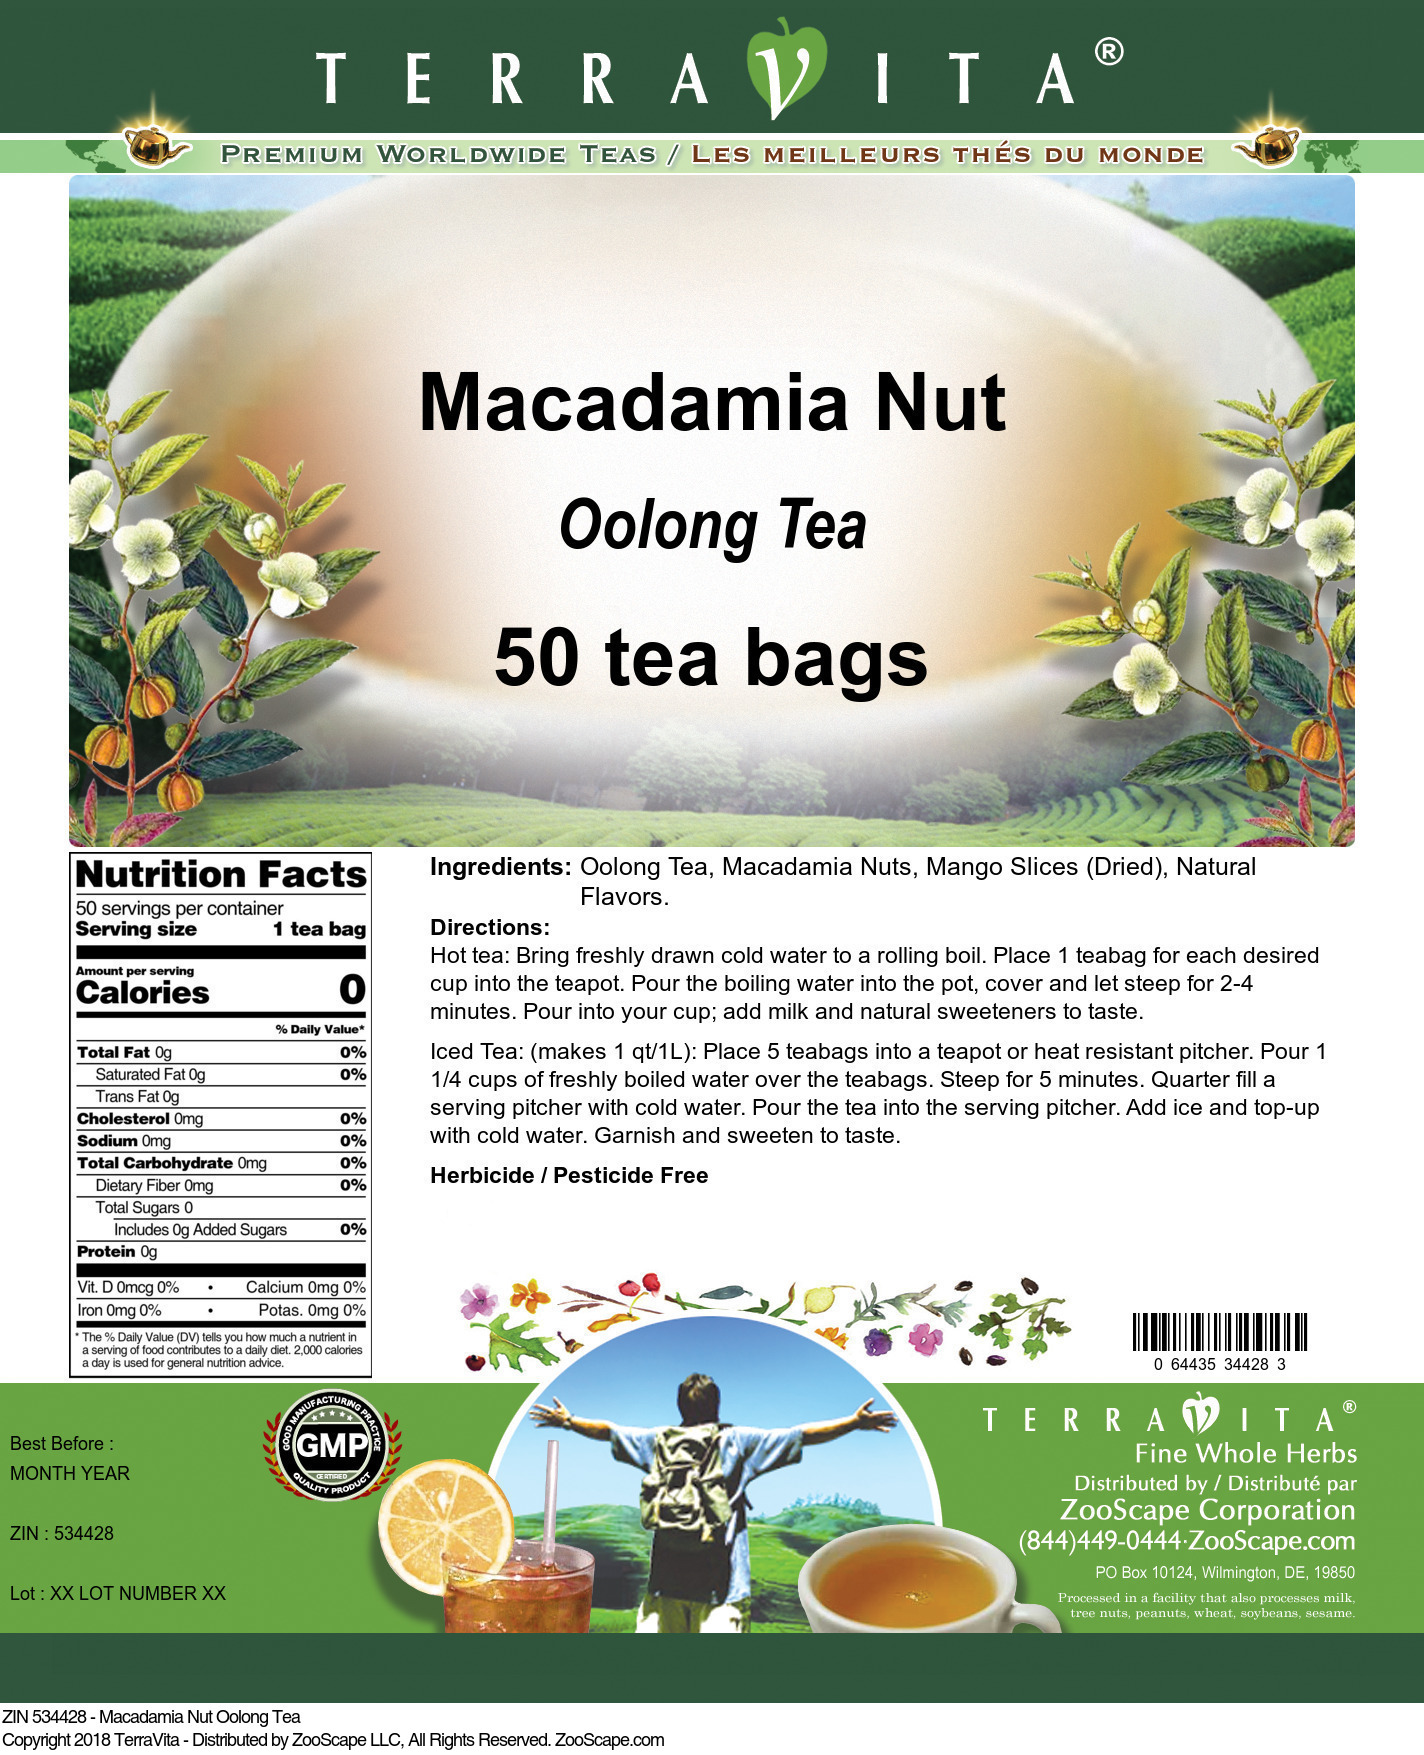 Macadamia Nut Oolong Tea - Label